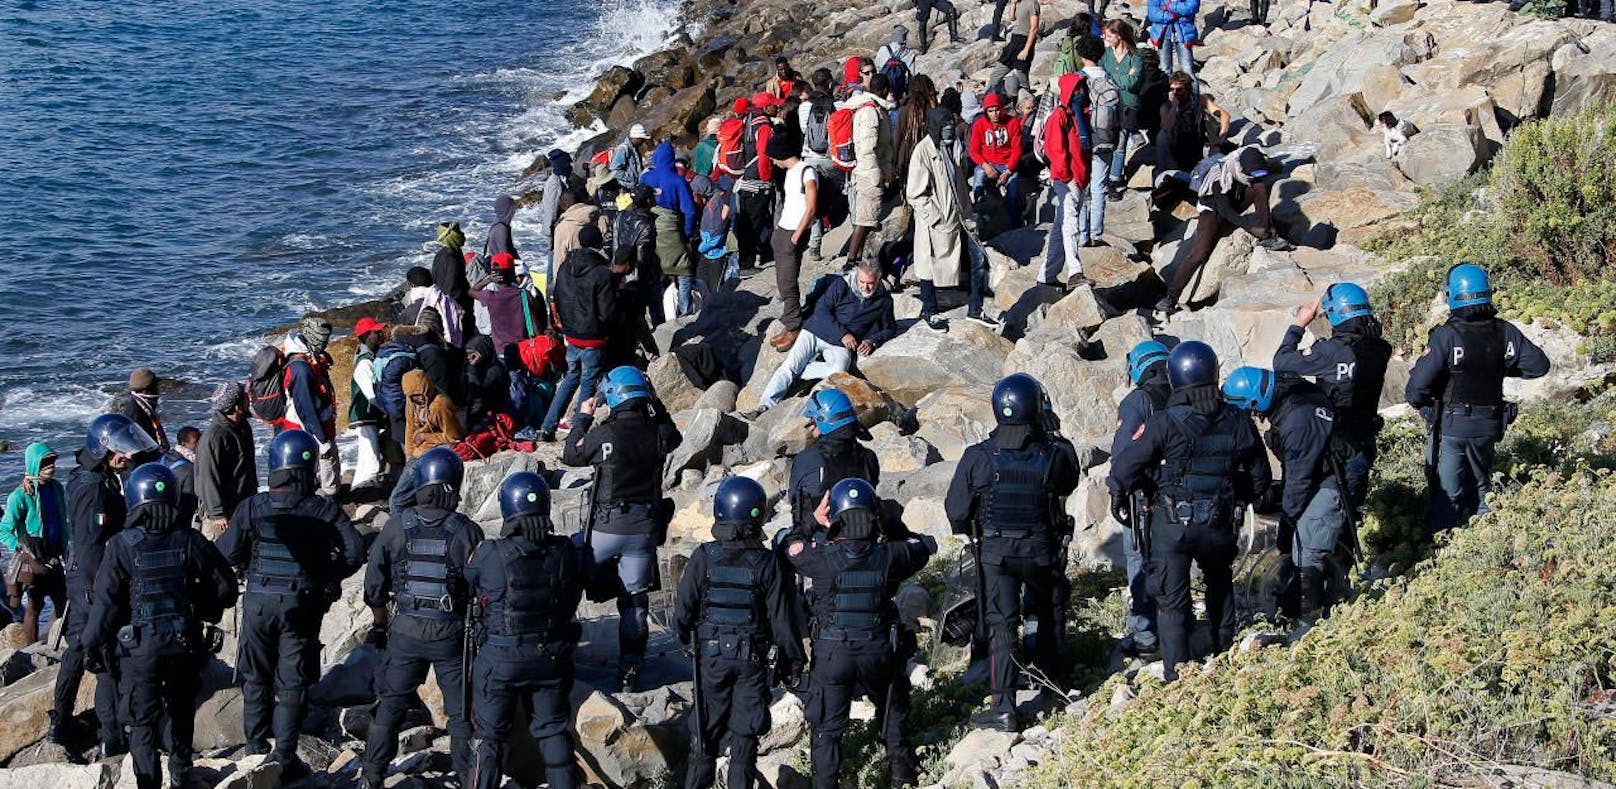 Polizisten gegen Migranten: In der italienischen Grenzstadt Ventimiglia kam es zu Unruhen. 